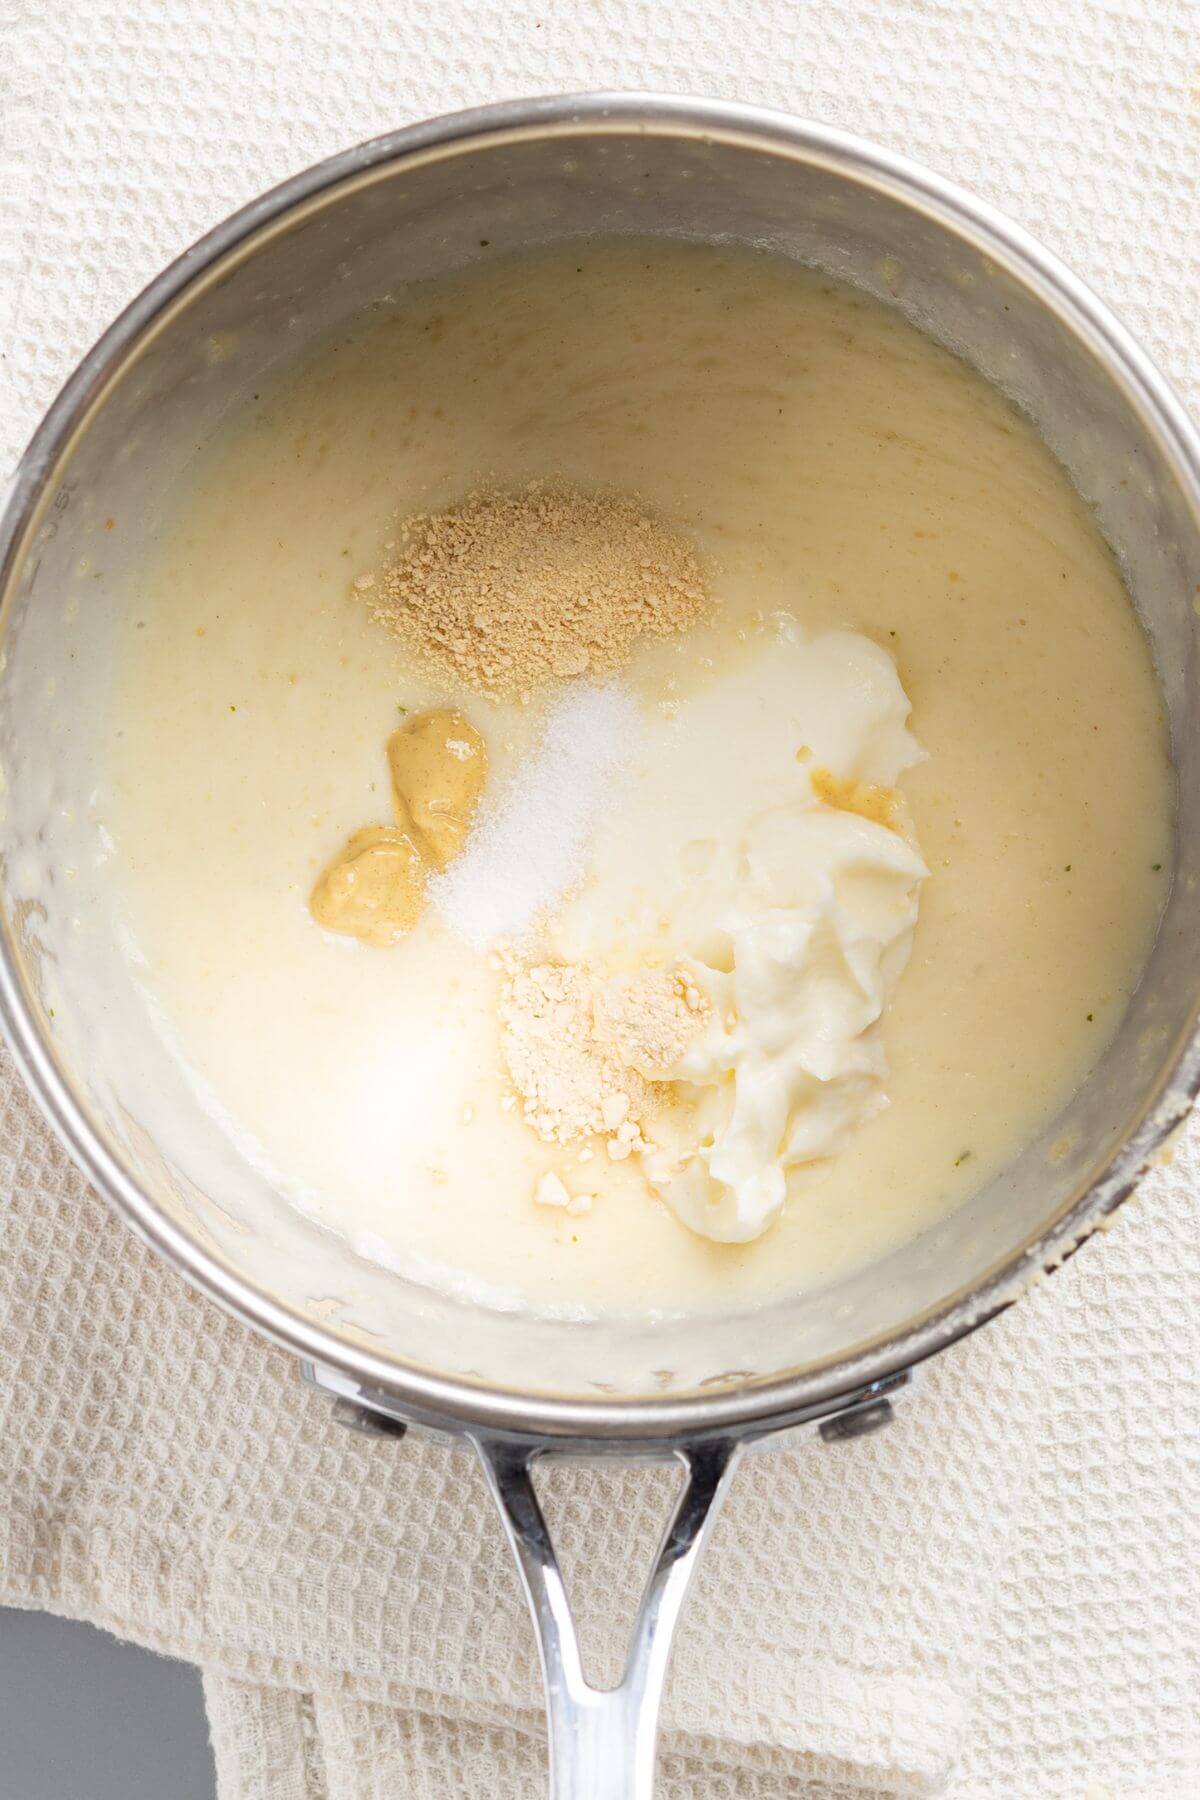 Sour cream Dijon mustard, salt, garlic and onion powder added to sauce in skillet.